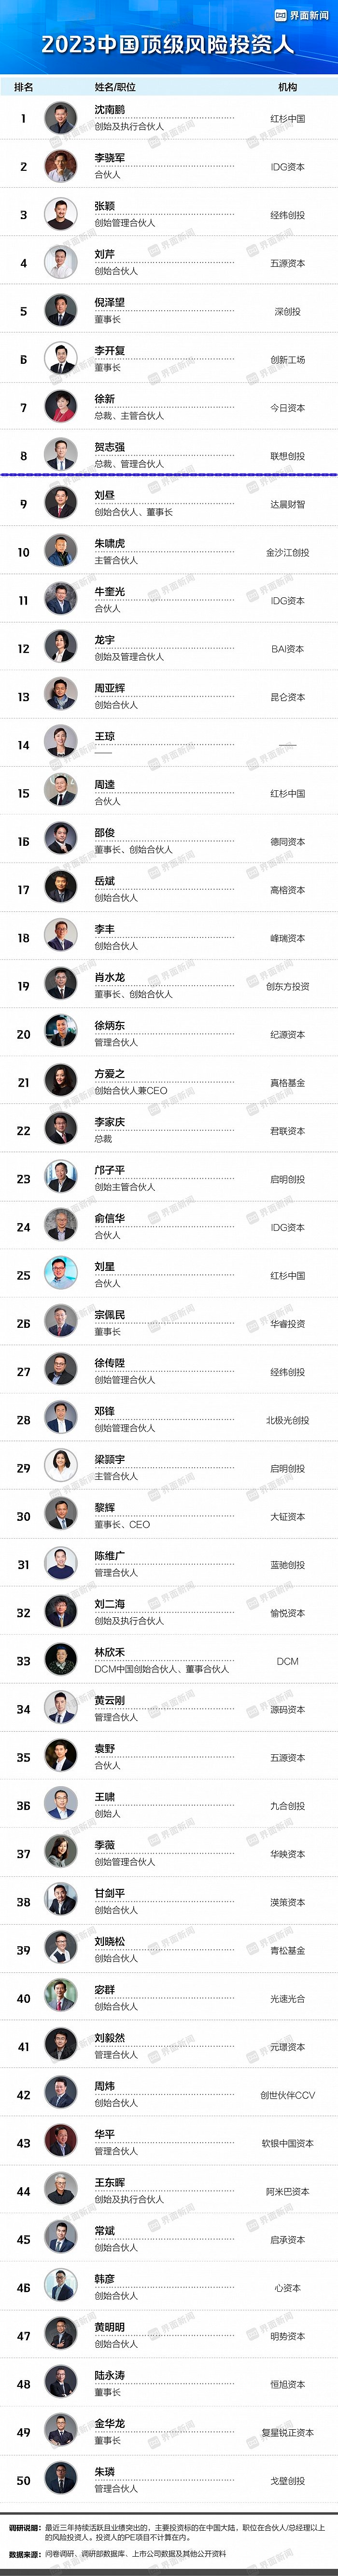 联想创投贺志强荣获界面新闻中国顶级风险投资人TOP 10 | LCIG 荣誉